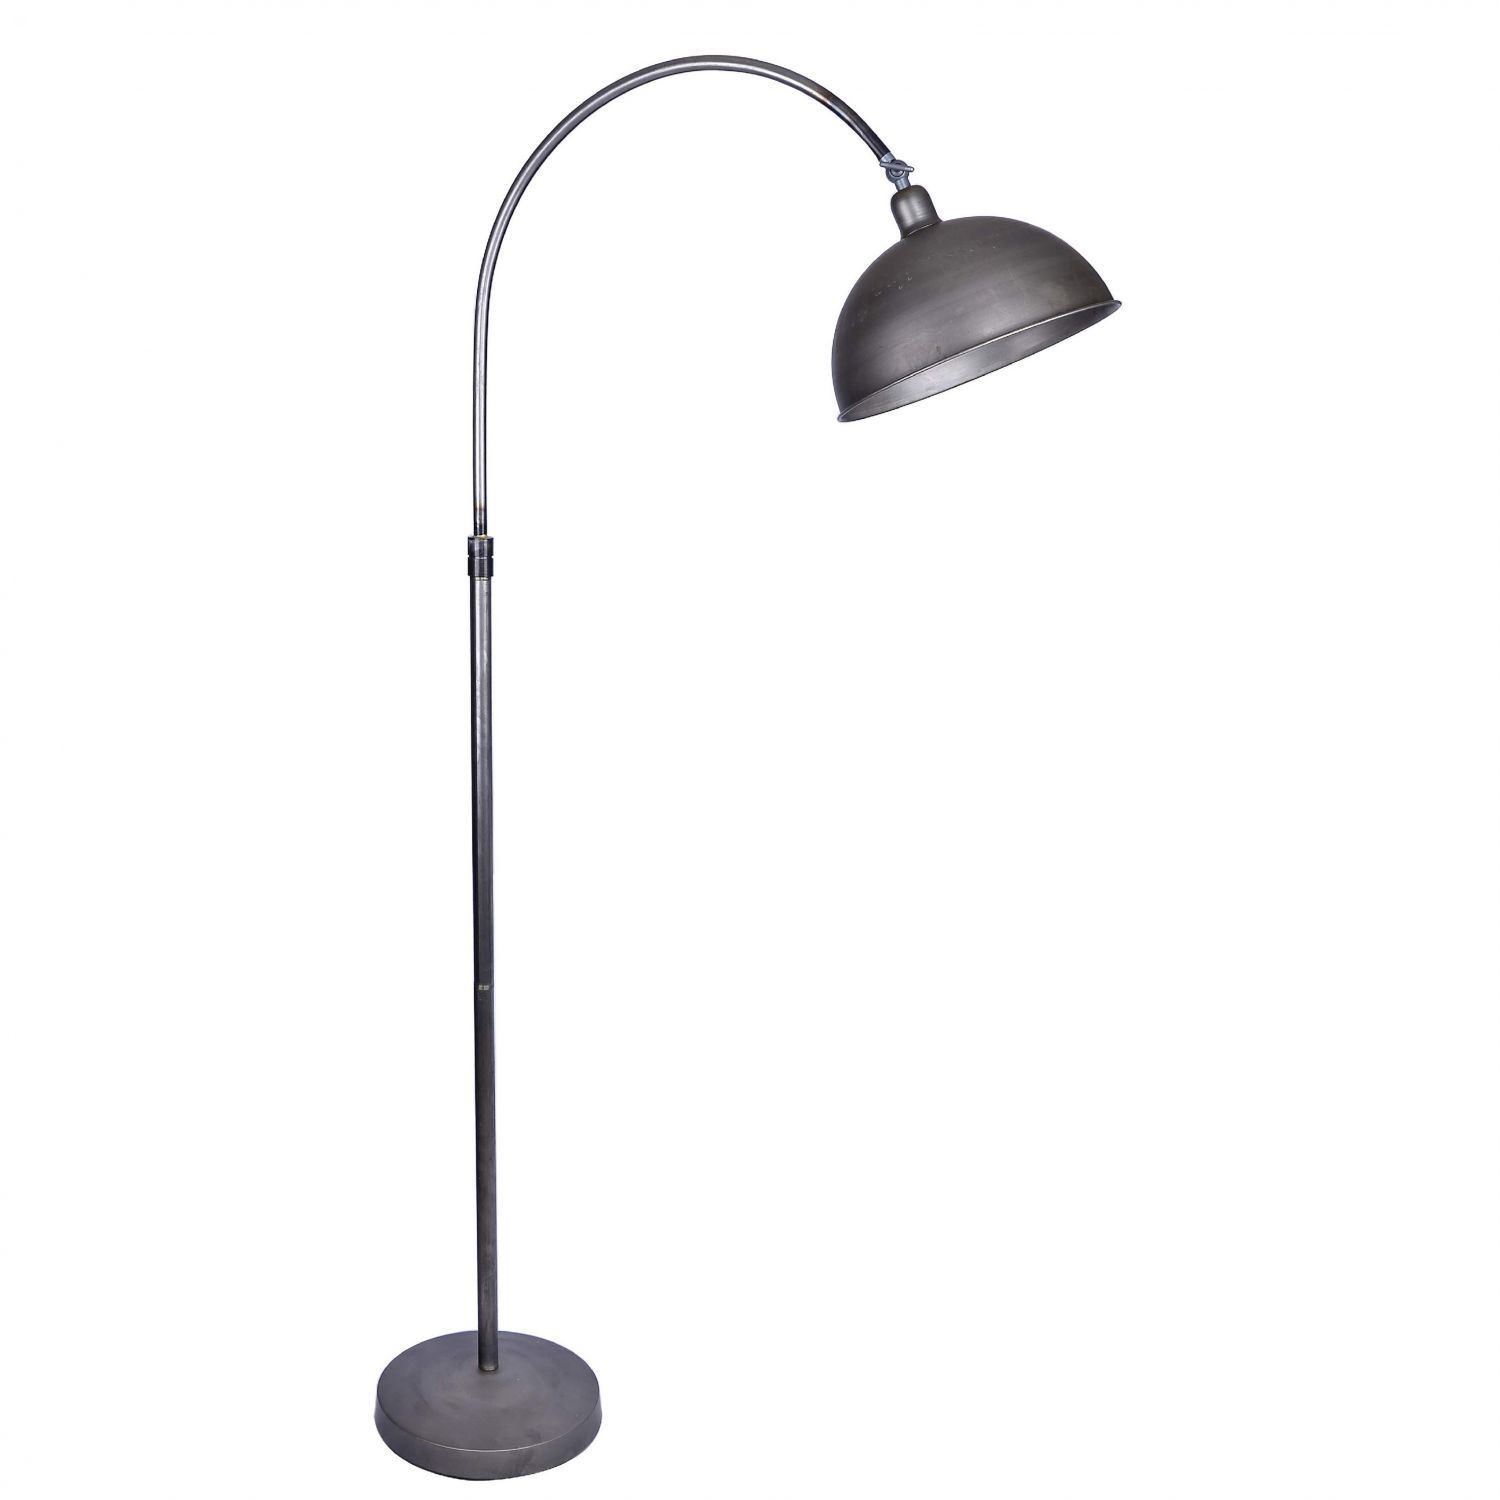 Vintage Metal Floor Lamp regarding size 1500 X 1500